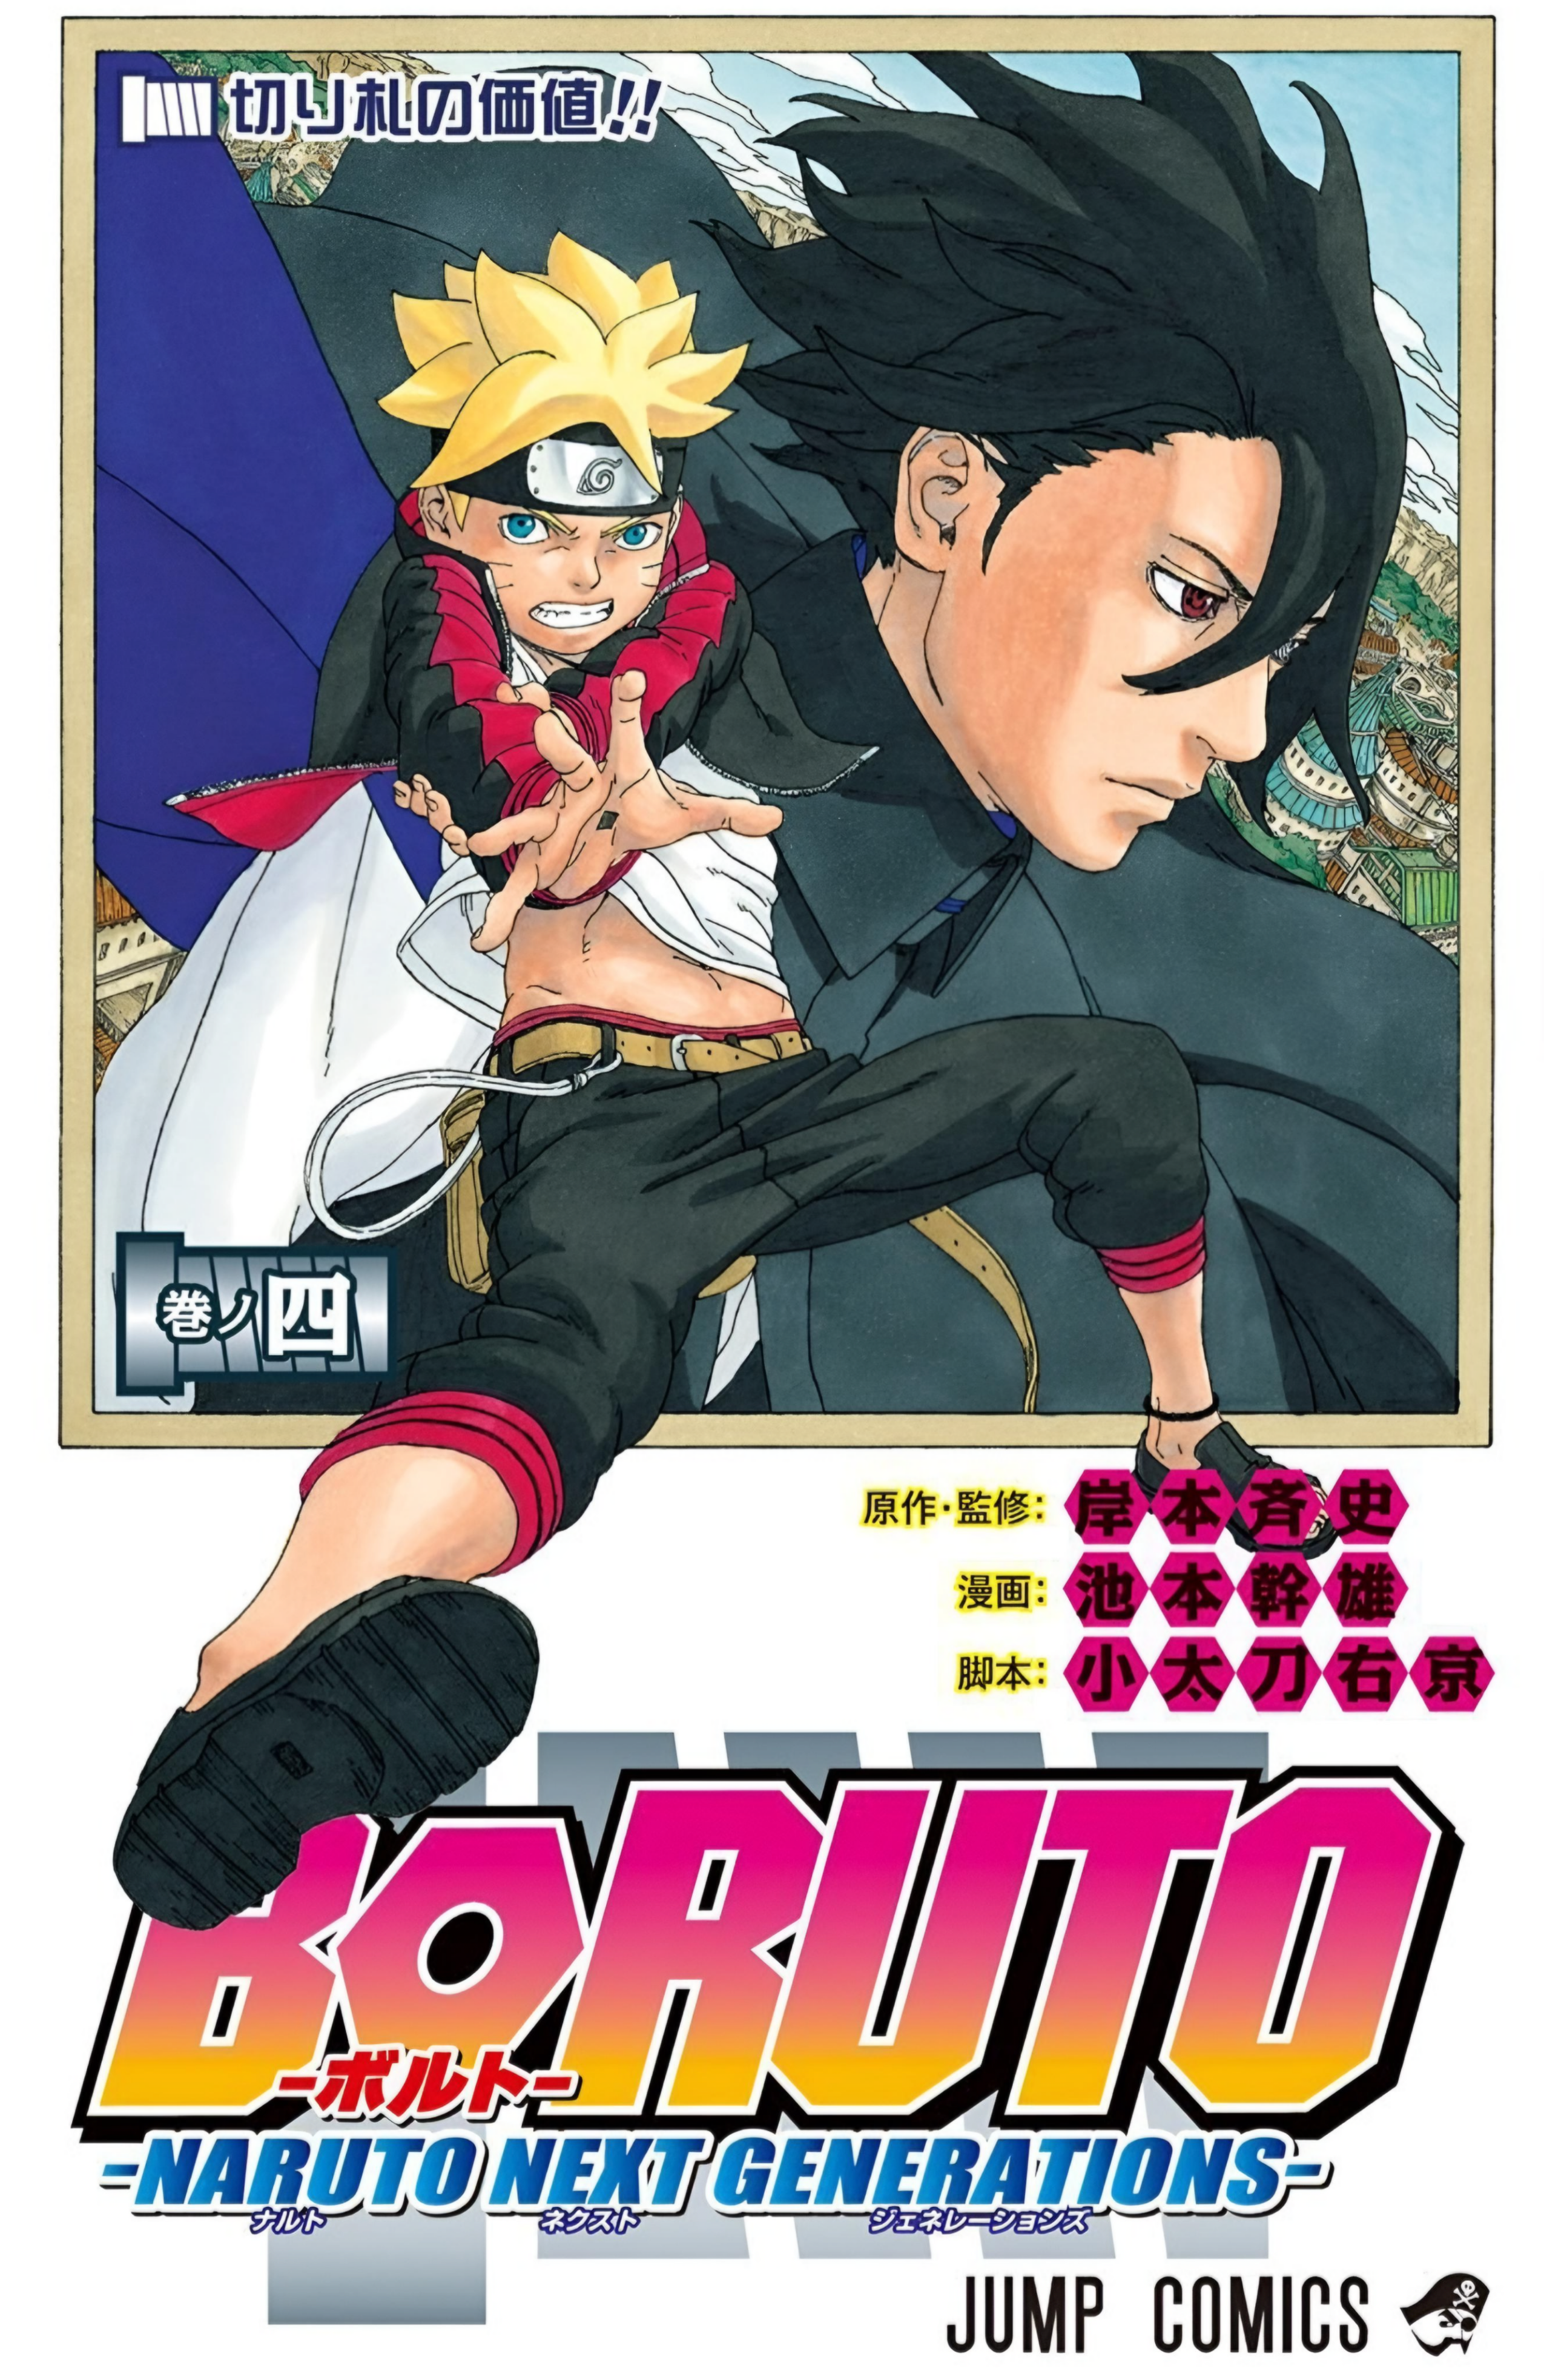 Boruto  Anime deve mostrar capítulo final do mangá de Naruto